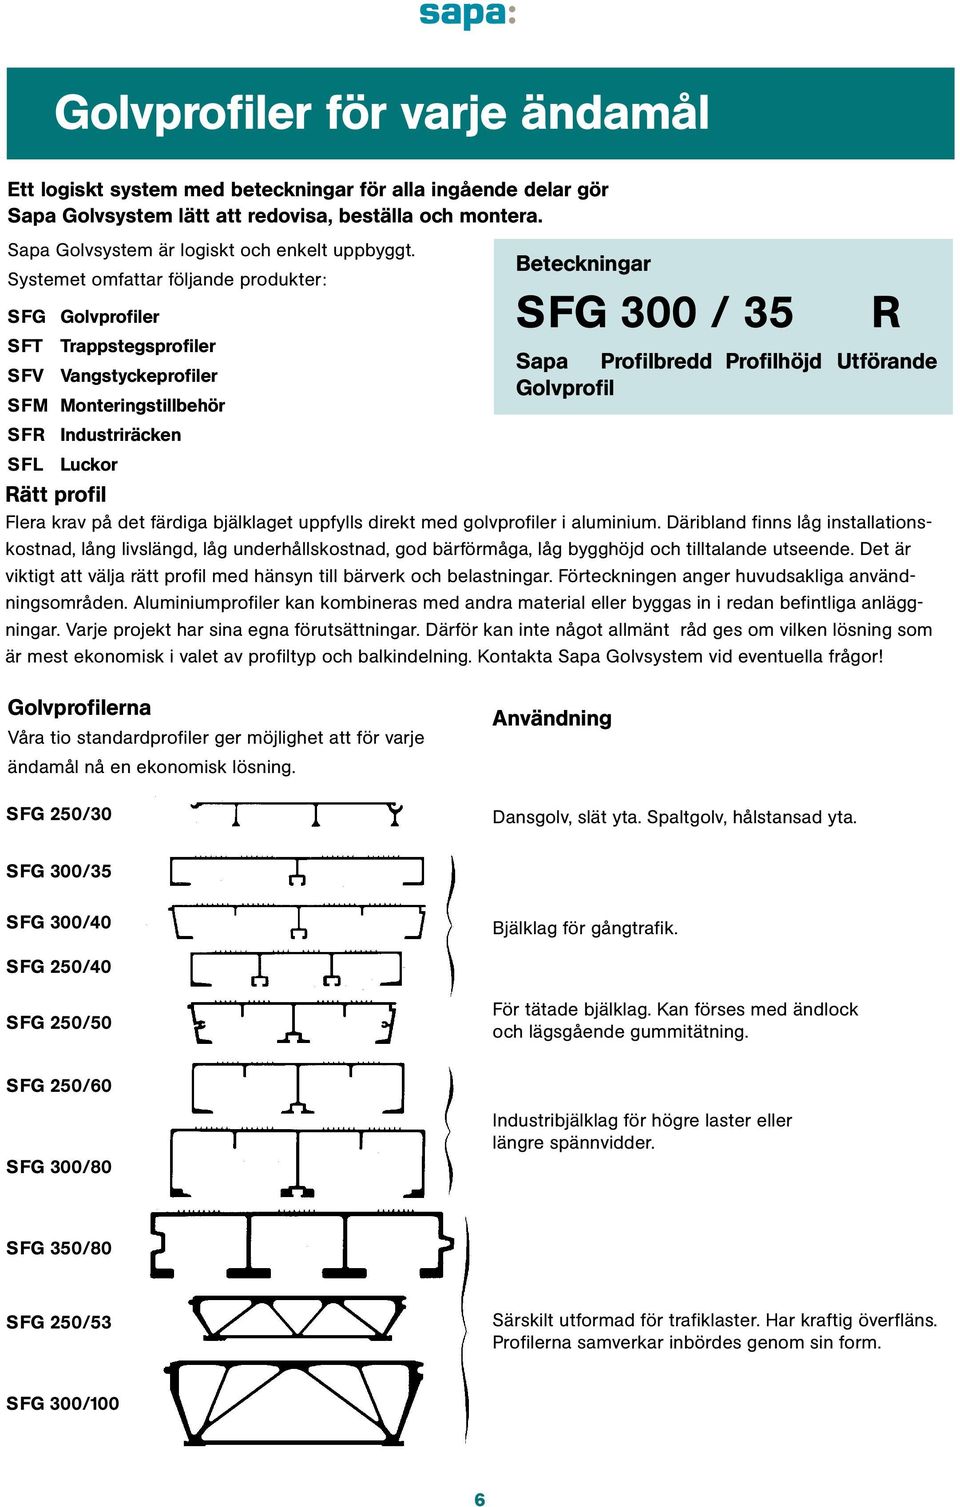 SFR Industriräcken SFL Luckor Rätt profil Flera krav på det färdiga bjälklaget uppfylls direkt med golvprofiler i aluminium.